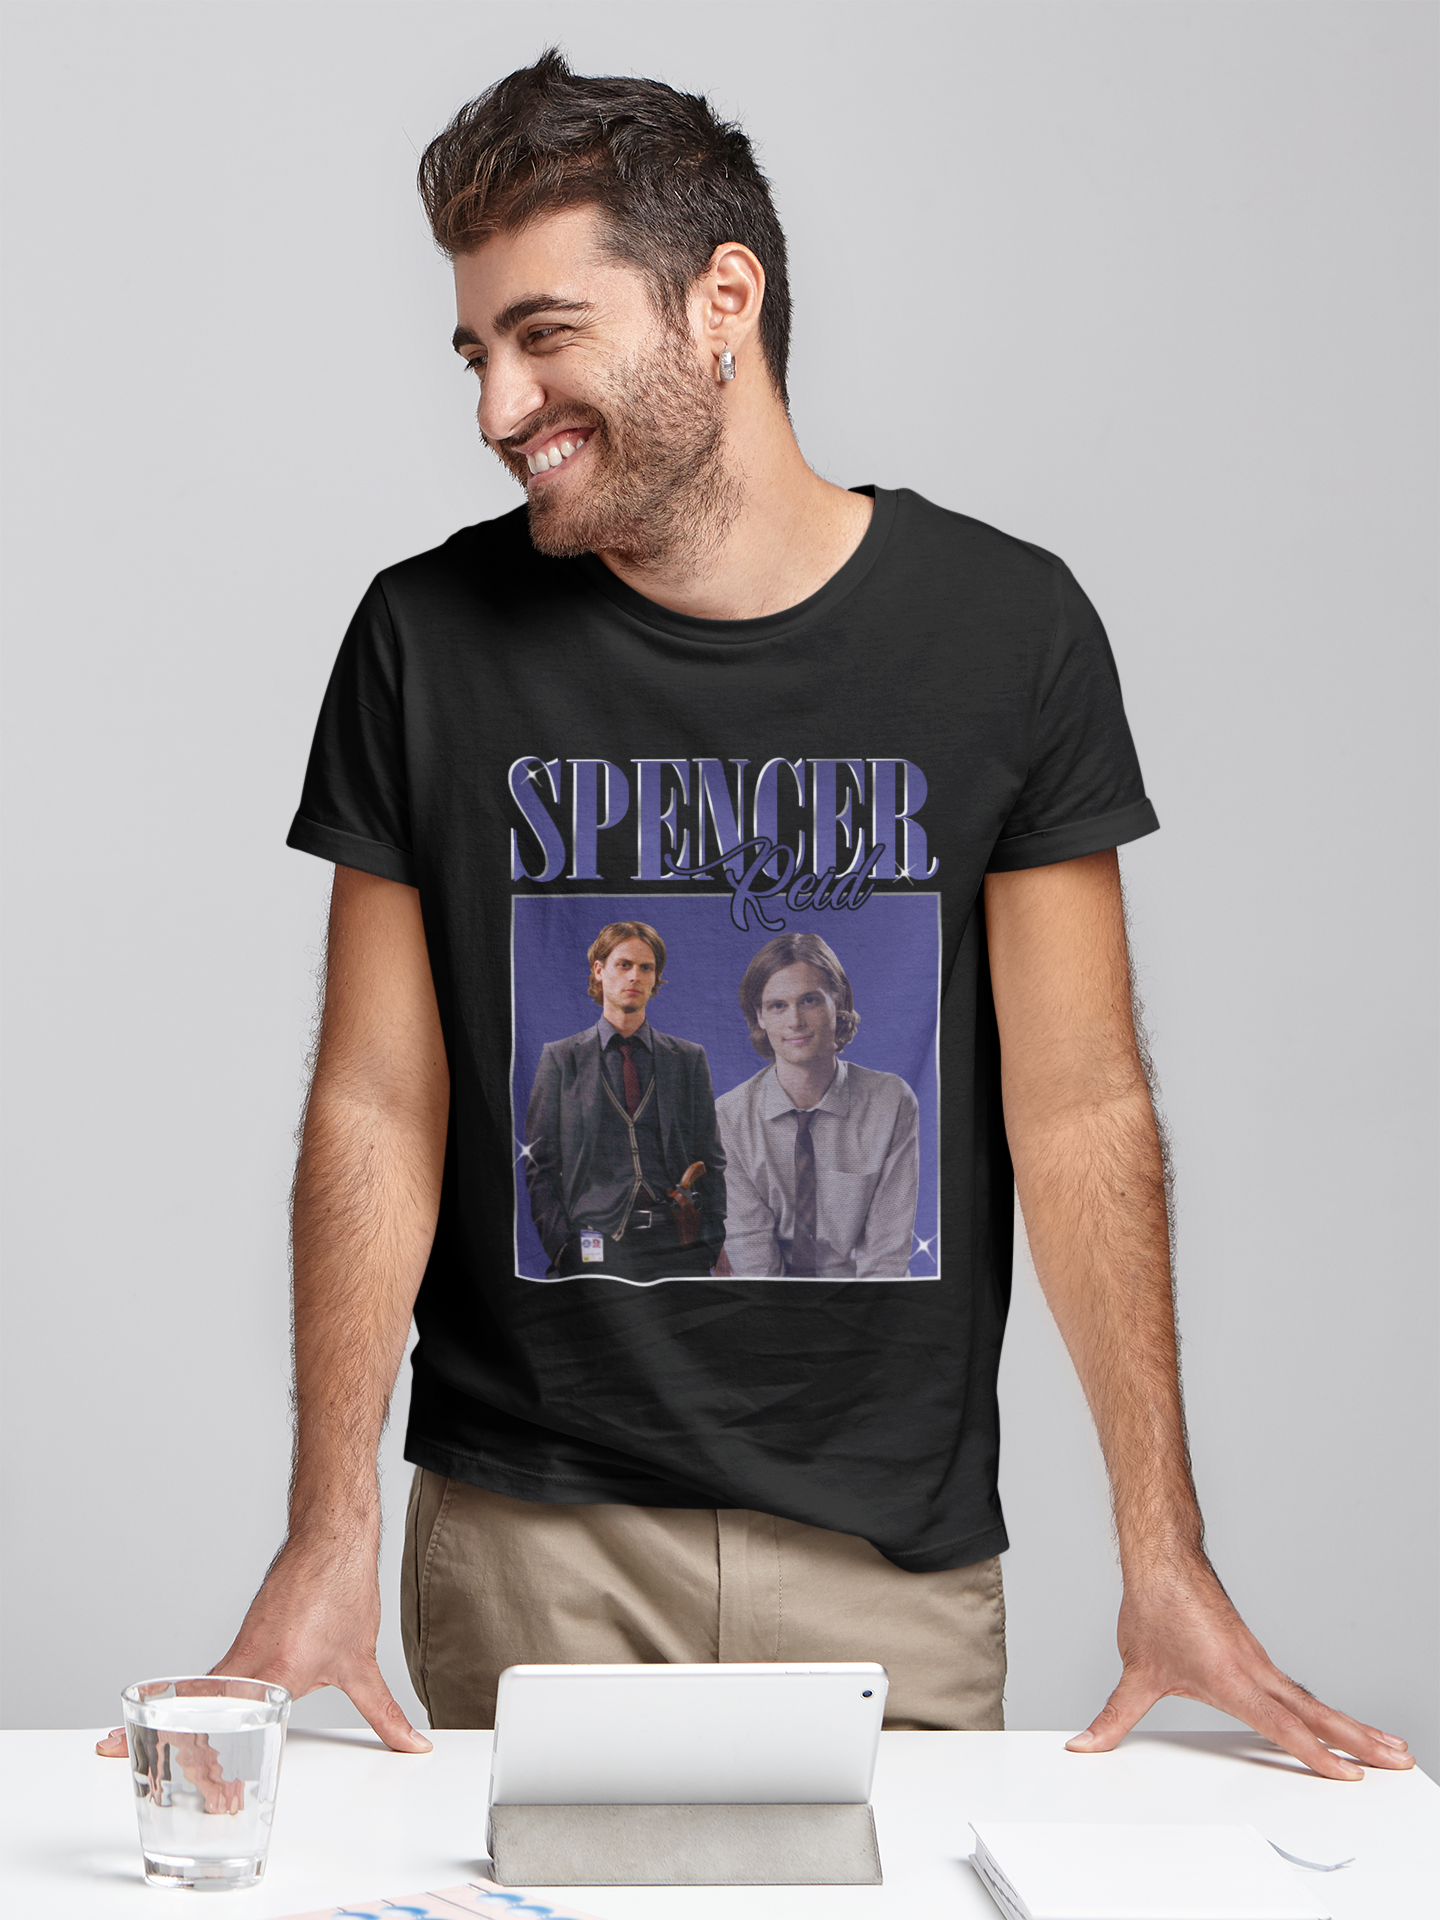 Criminal Minds T Shirt, Spencer Reid T Shirt